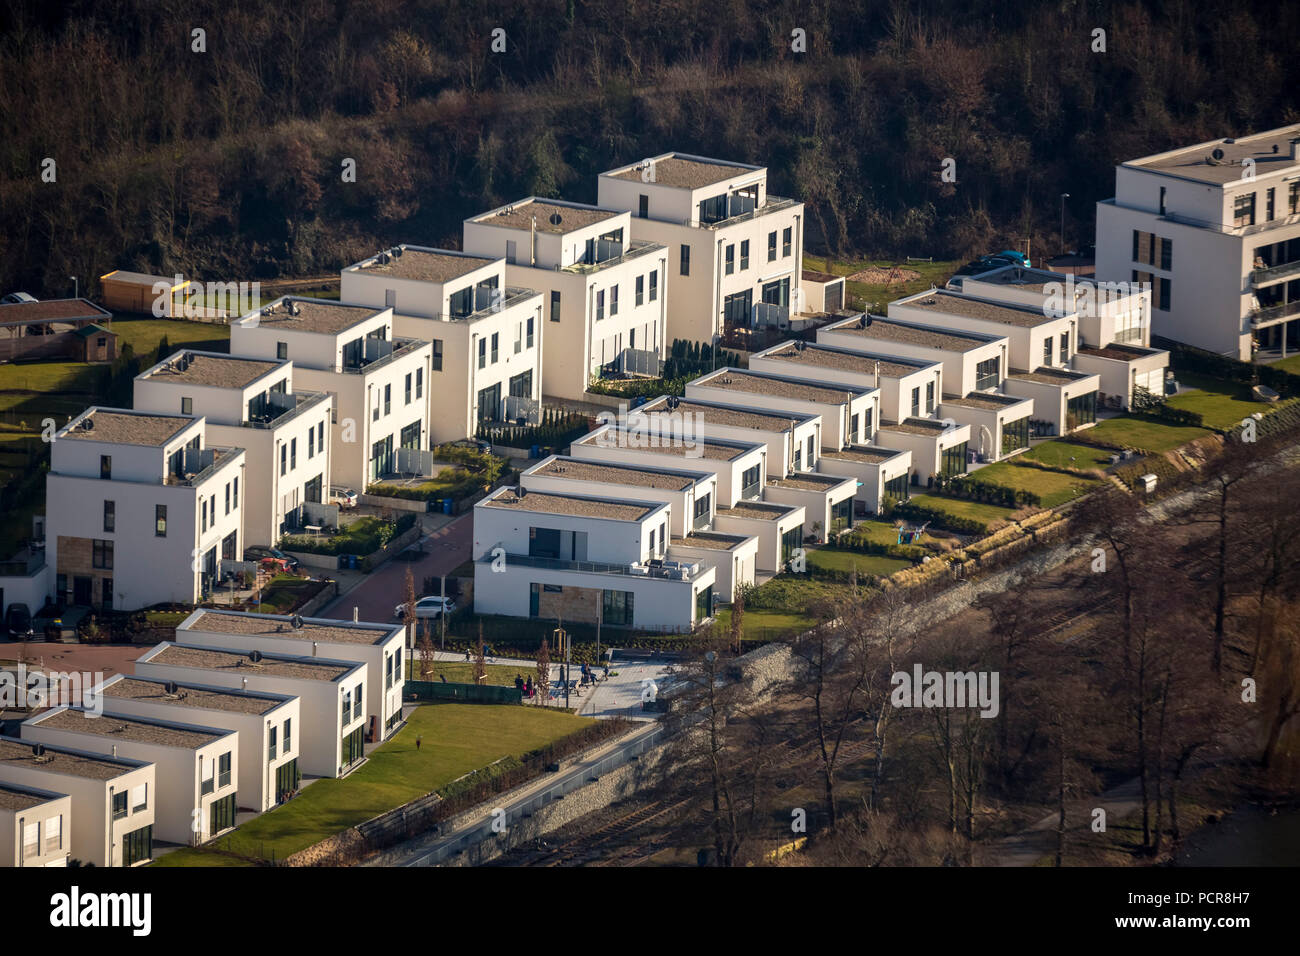 Seebogen, new housing development at Baldeneysee in Essen-Kupferdreh, Essen, Ruhr area, North Rhine-Westphalia, Germany Stock Photo